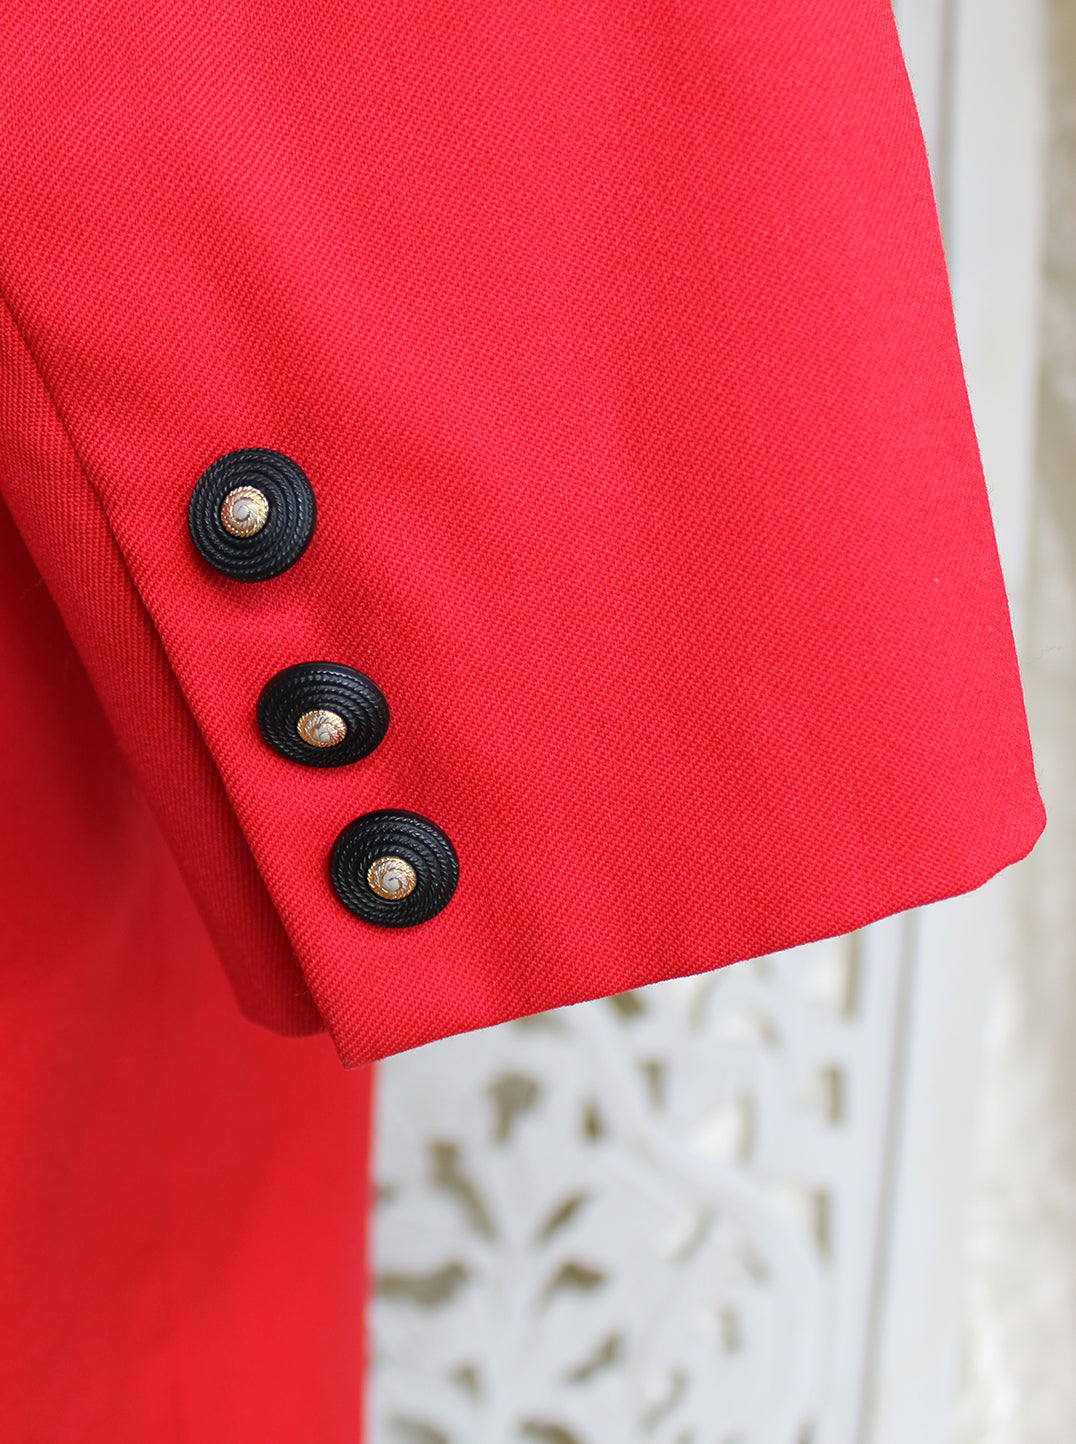 Red Joan Dwan Coat